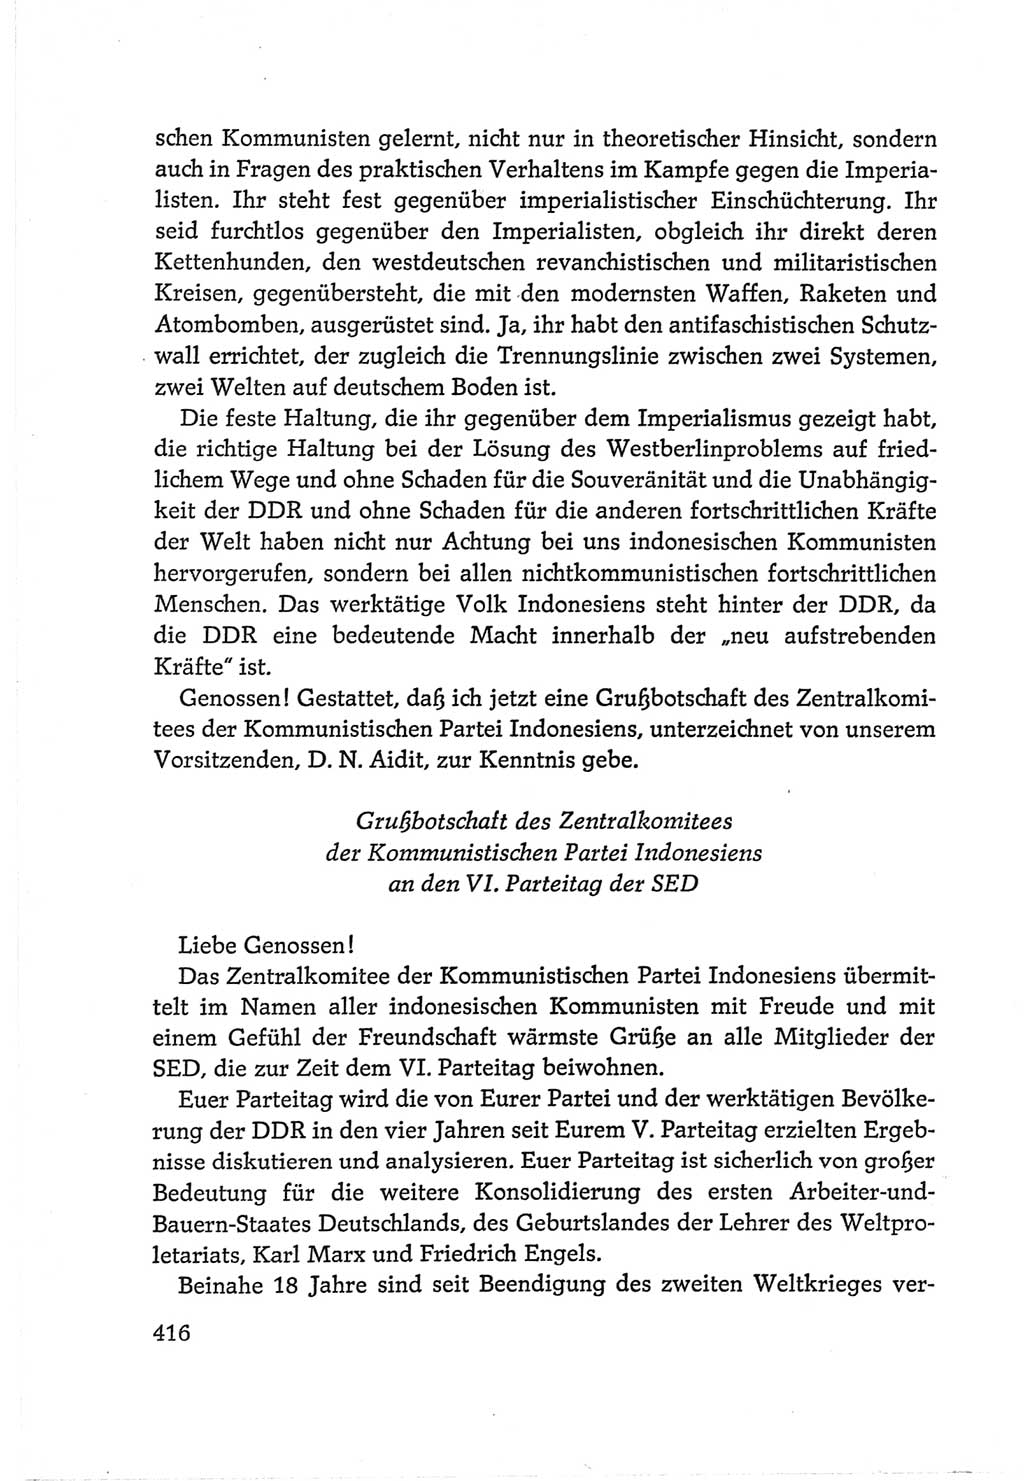 Protokoll der Verhandlungen des Ⅵ. Parteitages der Sozialistischen Einheitspartei Deutschlands (SED) [Deutsche Demokratische Republik (DDR)] 1963, Band Ⅱ, Seite 416 (Prot. Verh. Ⅵ. PT SED DDR 1963, Bd. Ⅱ, S. 416)